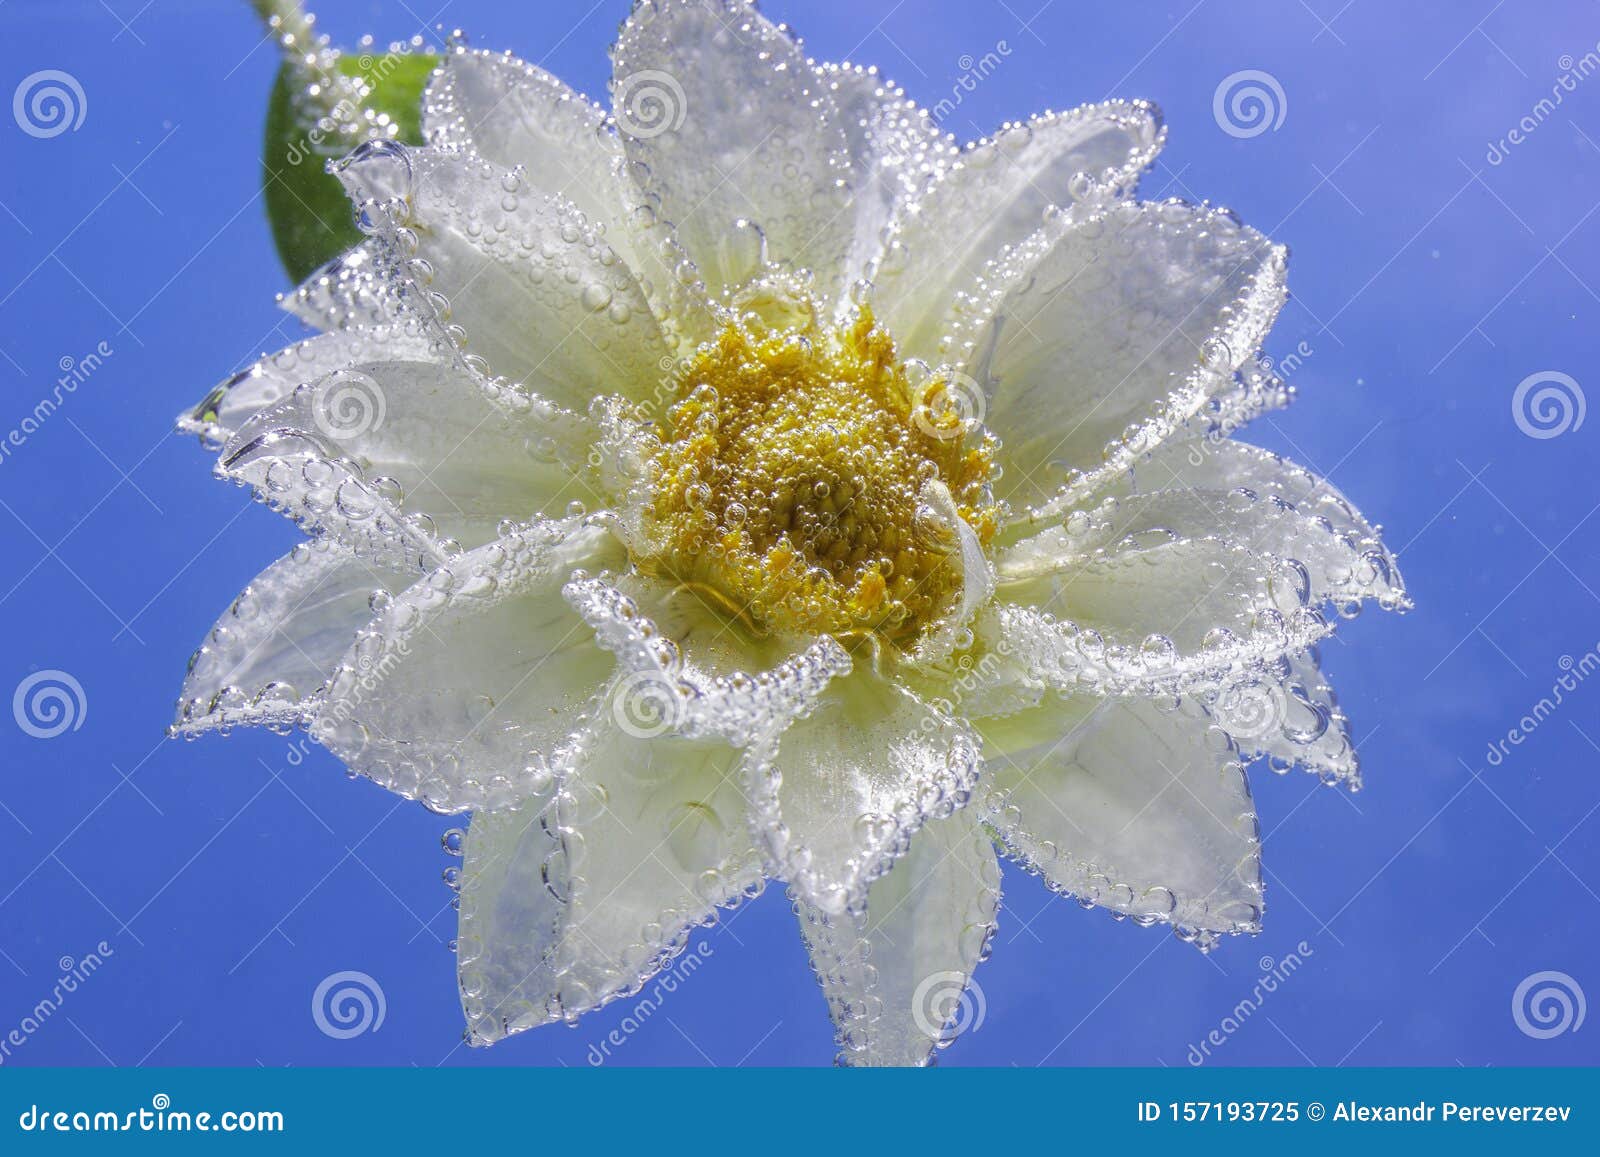 une fleur Martin du 16 Janvier trouvée Martine D%C3%A9licate-fleur-de-chrysanth%C3%A8me-blanc-sous-l-eau-recouverte-bulles-blanche-macro-157193725